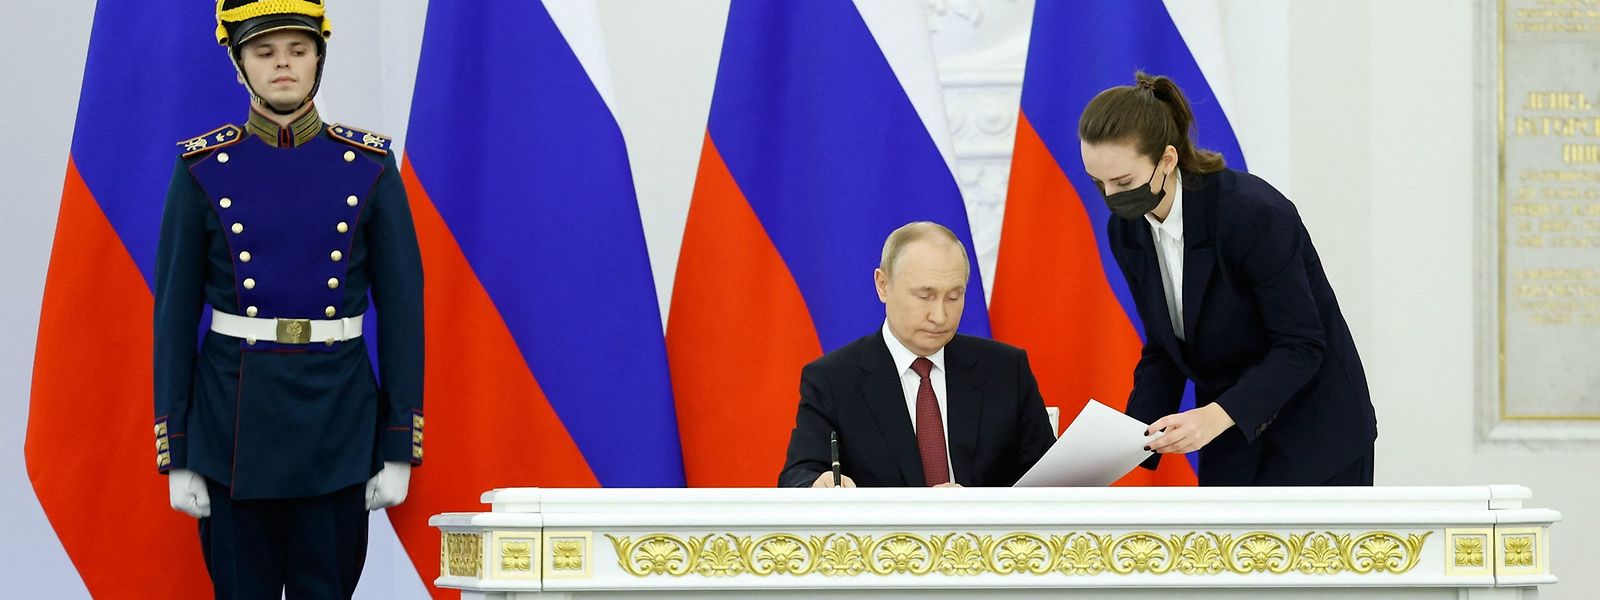 Wladimir Putin unterzeichnet die Dokumente zur Annexion der Regionen Donezk, Luhansk, Cherson und Saporischschja.